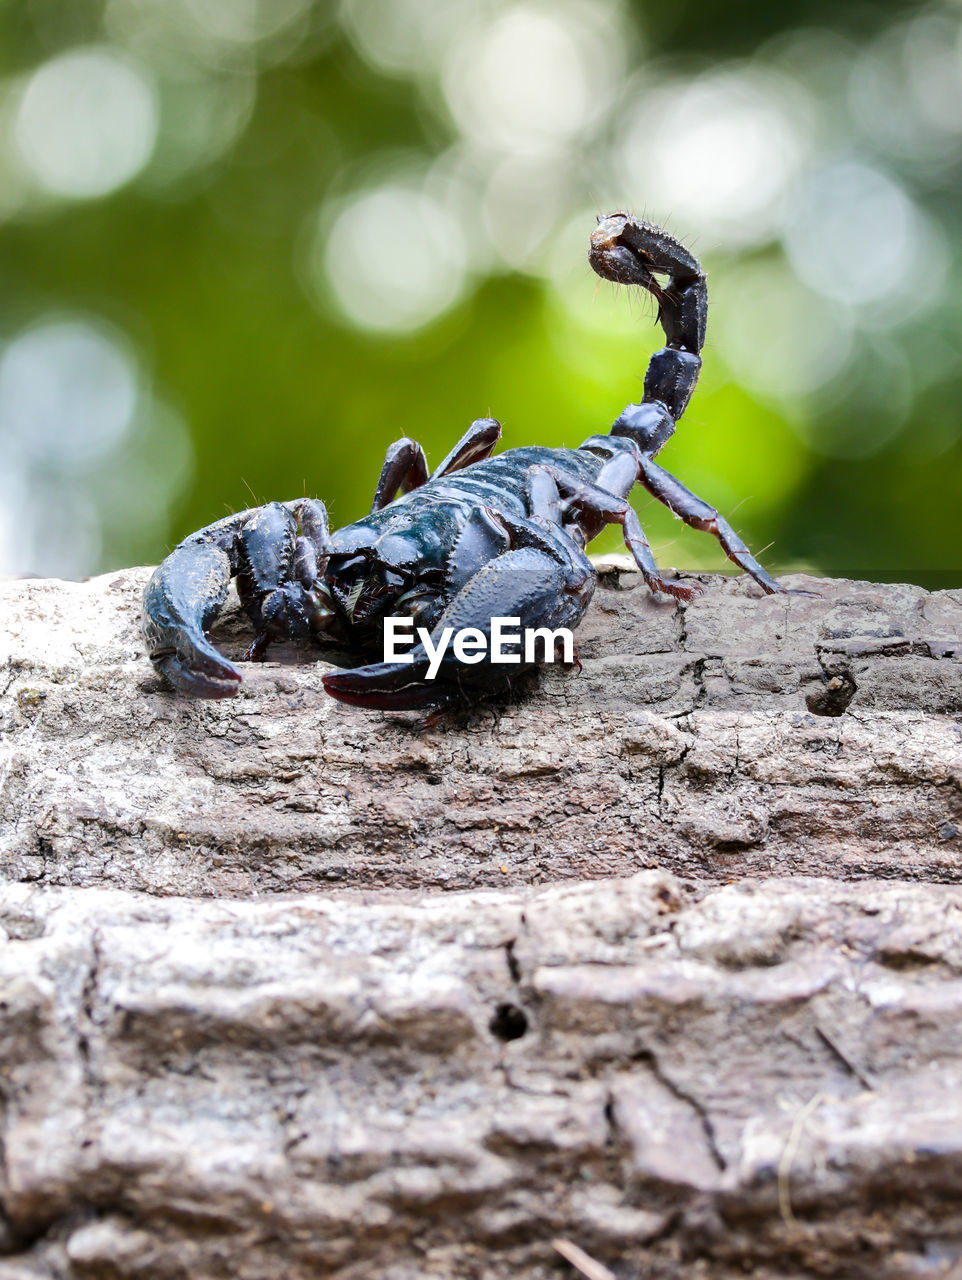 Scorpion on fallen tree